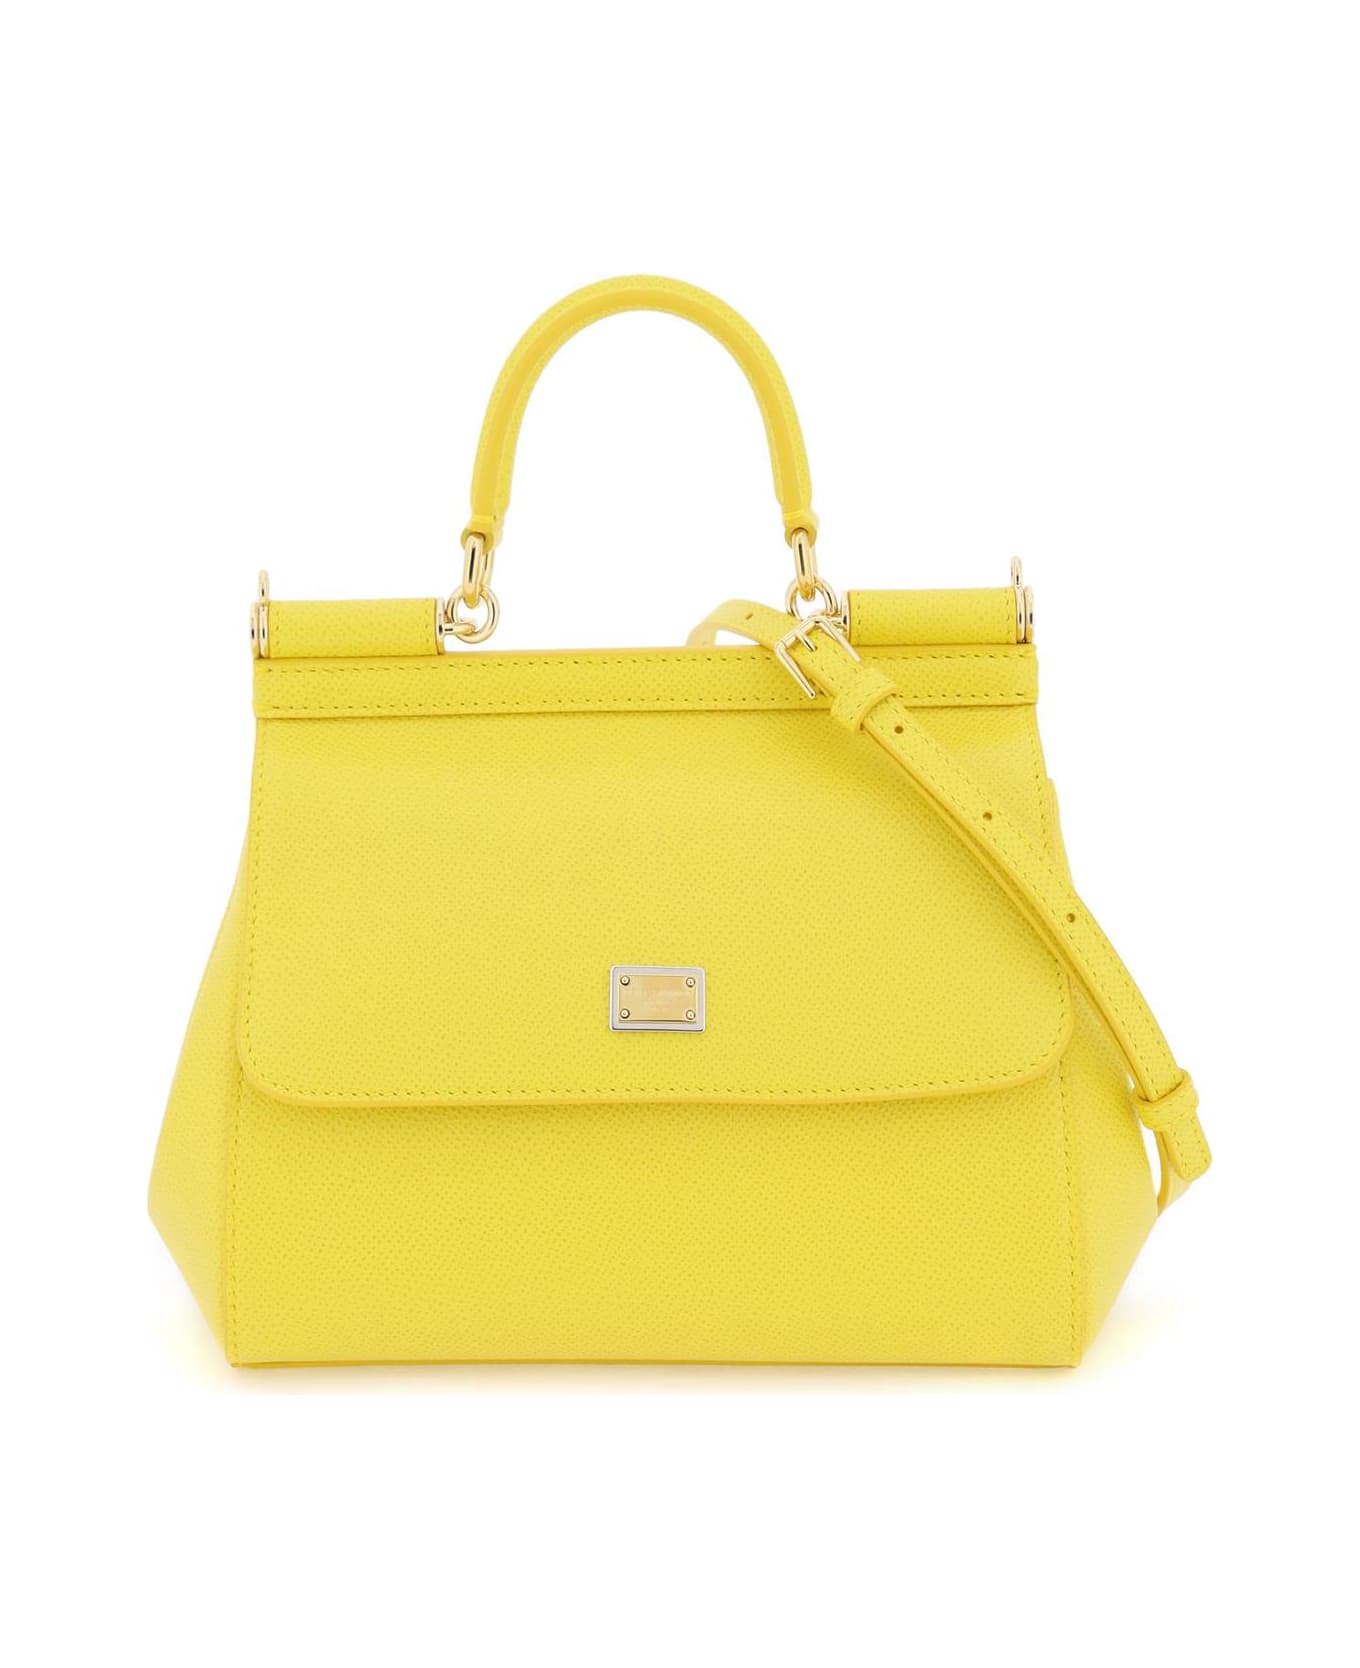 Dolce & Gabbana Sicily Handbag - GIALLO INTENSO (Yellow)